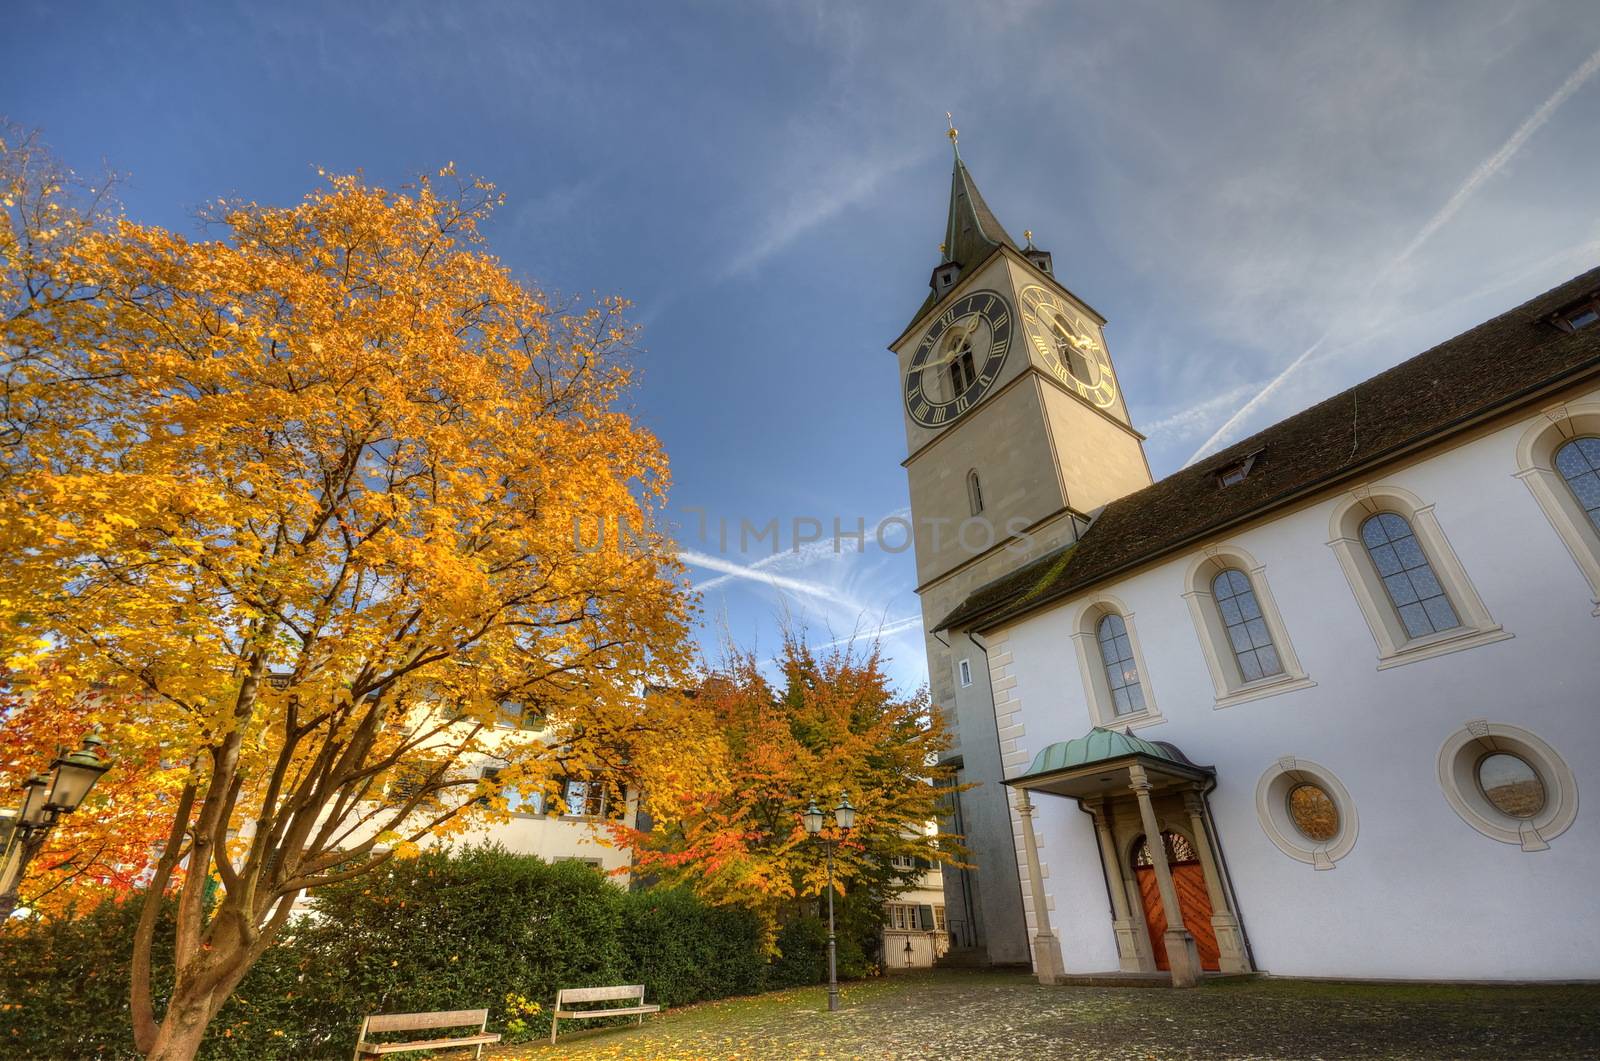 Church in Zurich, Switzerland at autumn